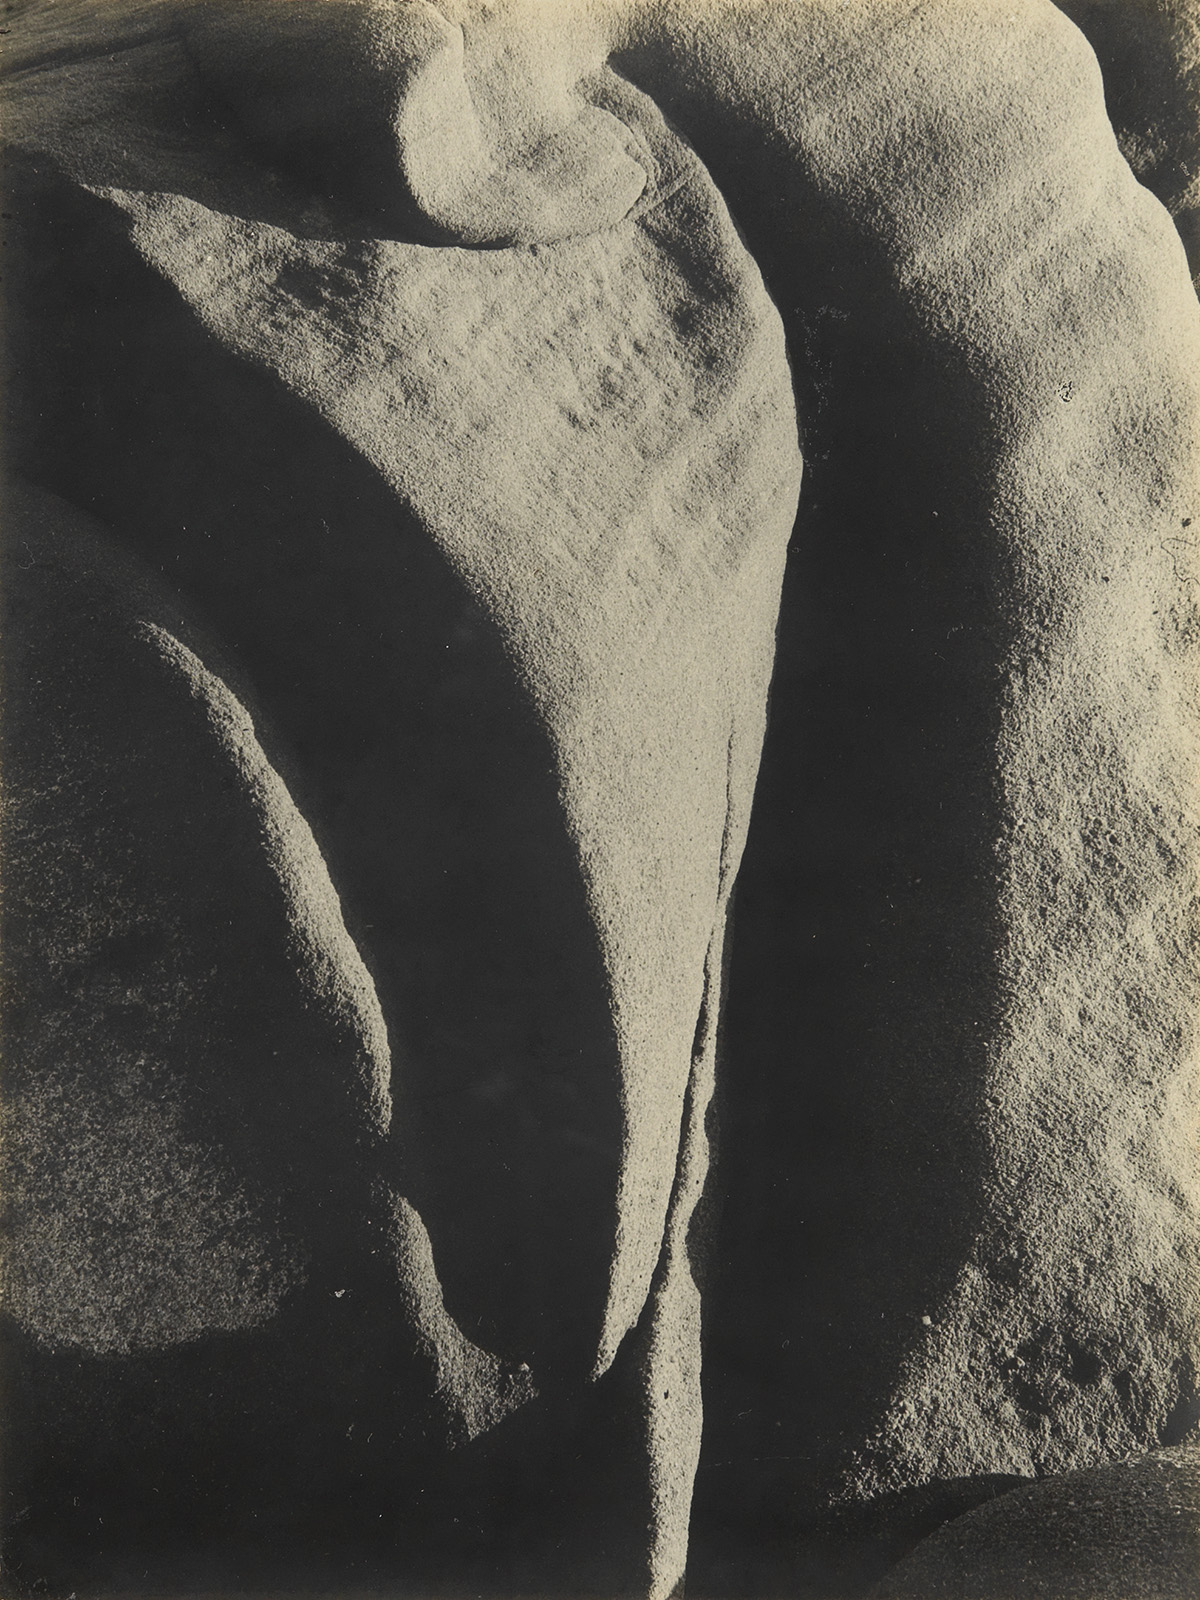 BRETT WESTON (1911-1993) Abstraction of rocks.